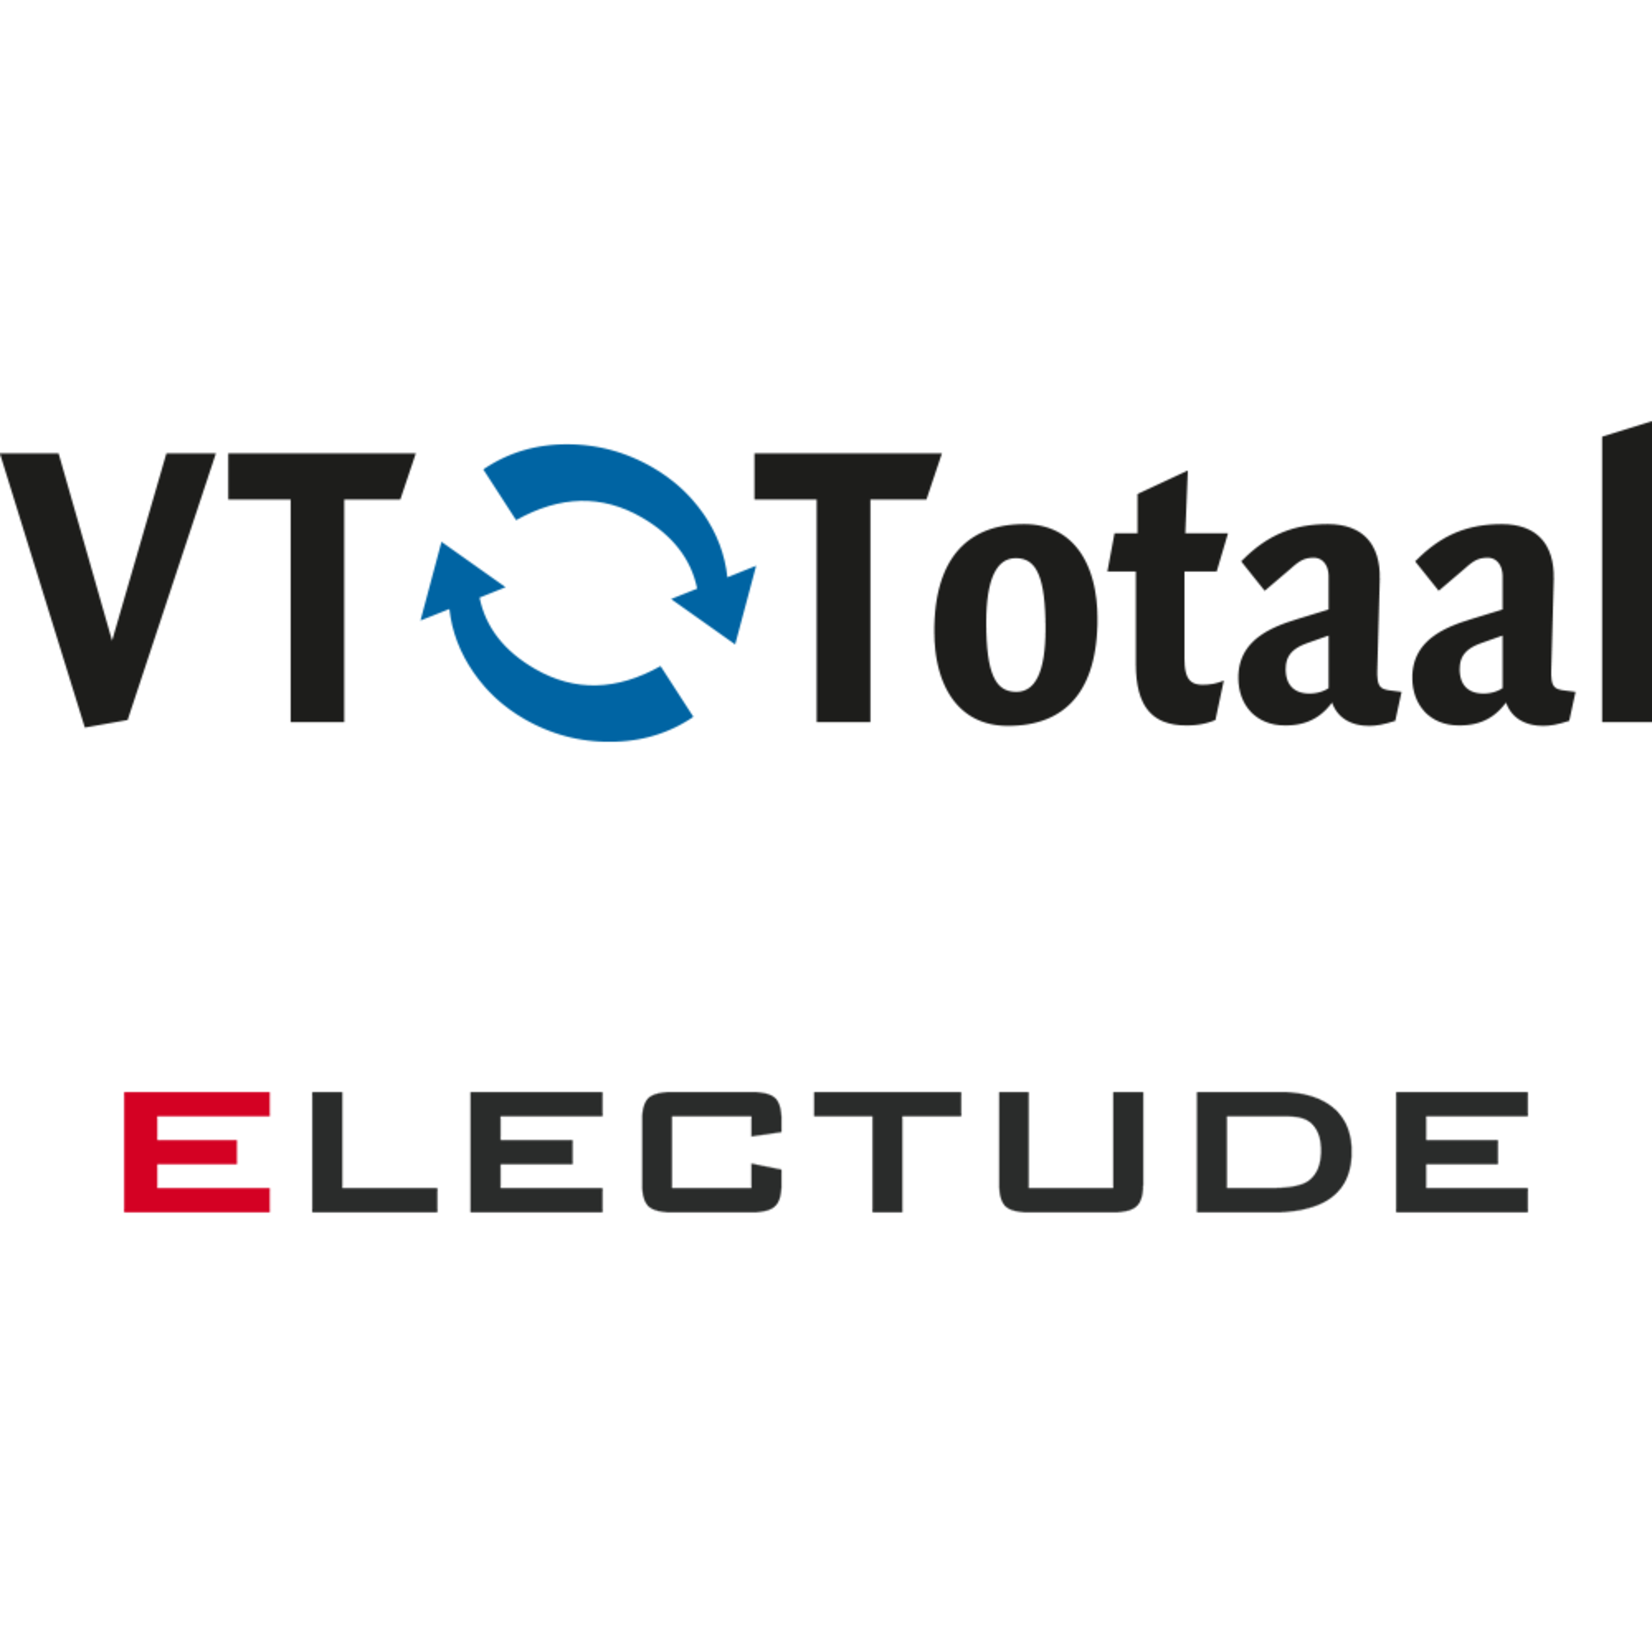 Licentie Electude - combivoucher: vmbo Automotive + MK Autotechniek, VT-Totaal 1 schooljaar